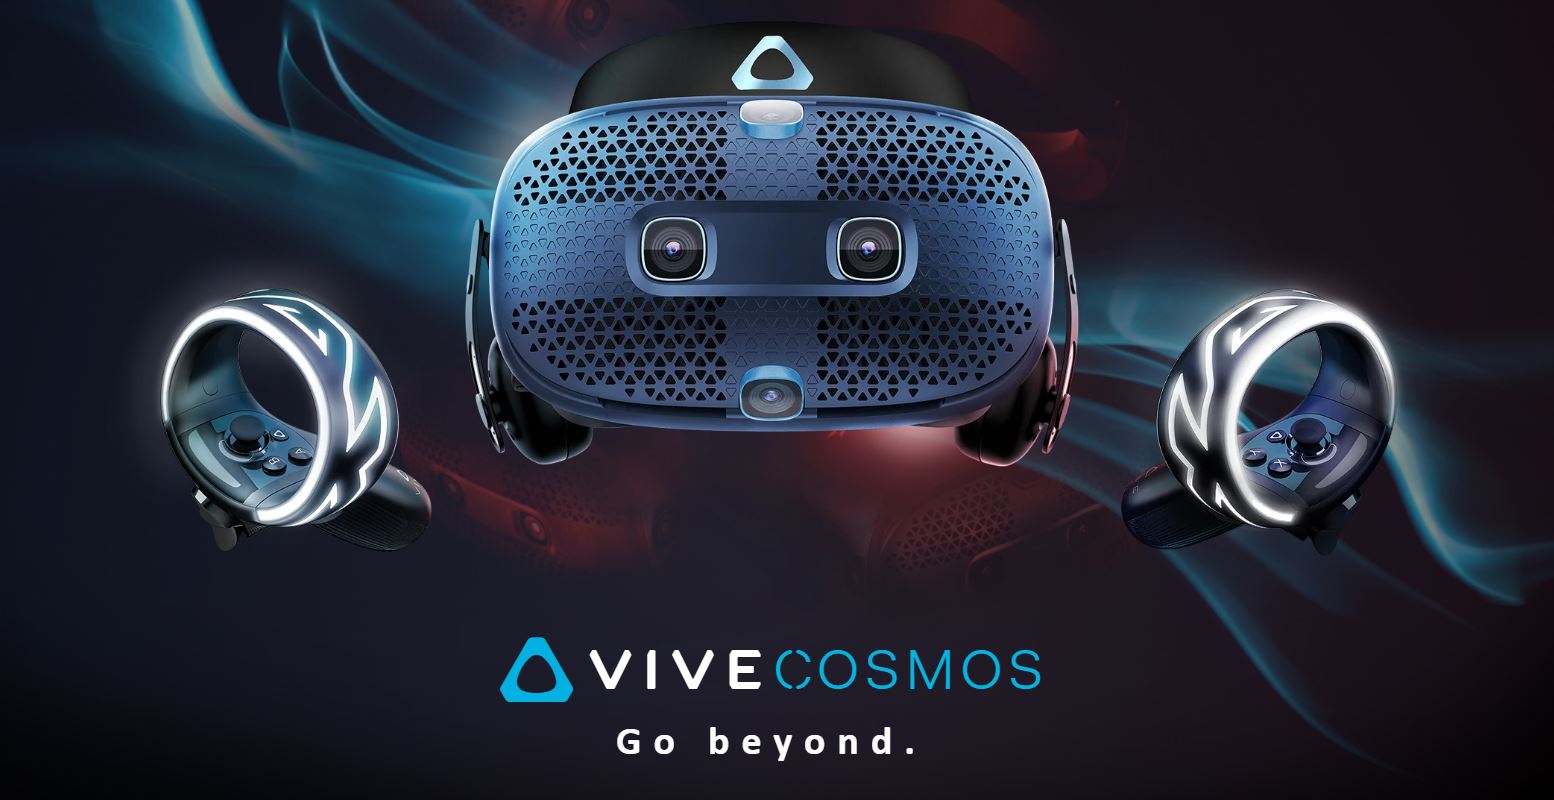 HTC VIVE ra mắt sản phẩm mới Vive Cosmos – nâng cấp phần mềm VR 